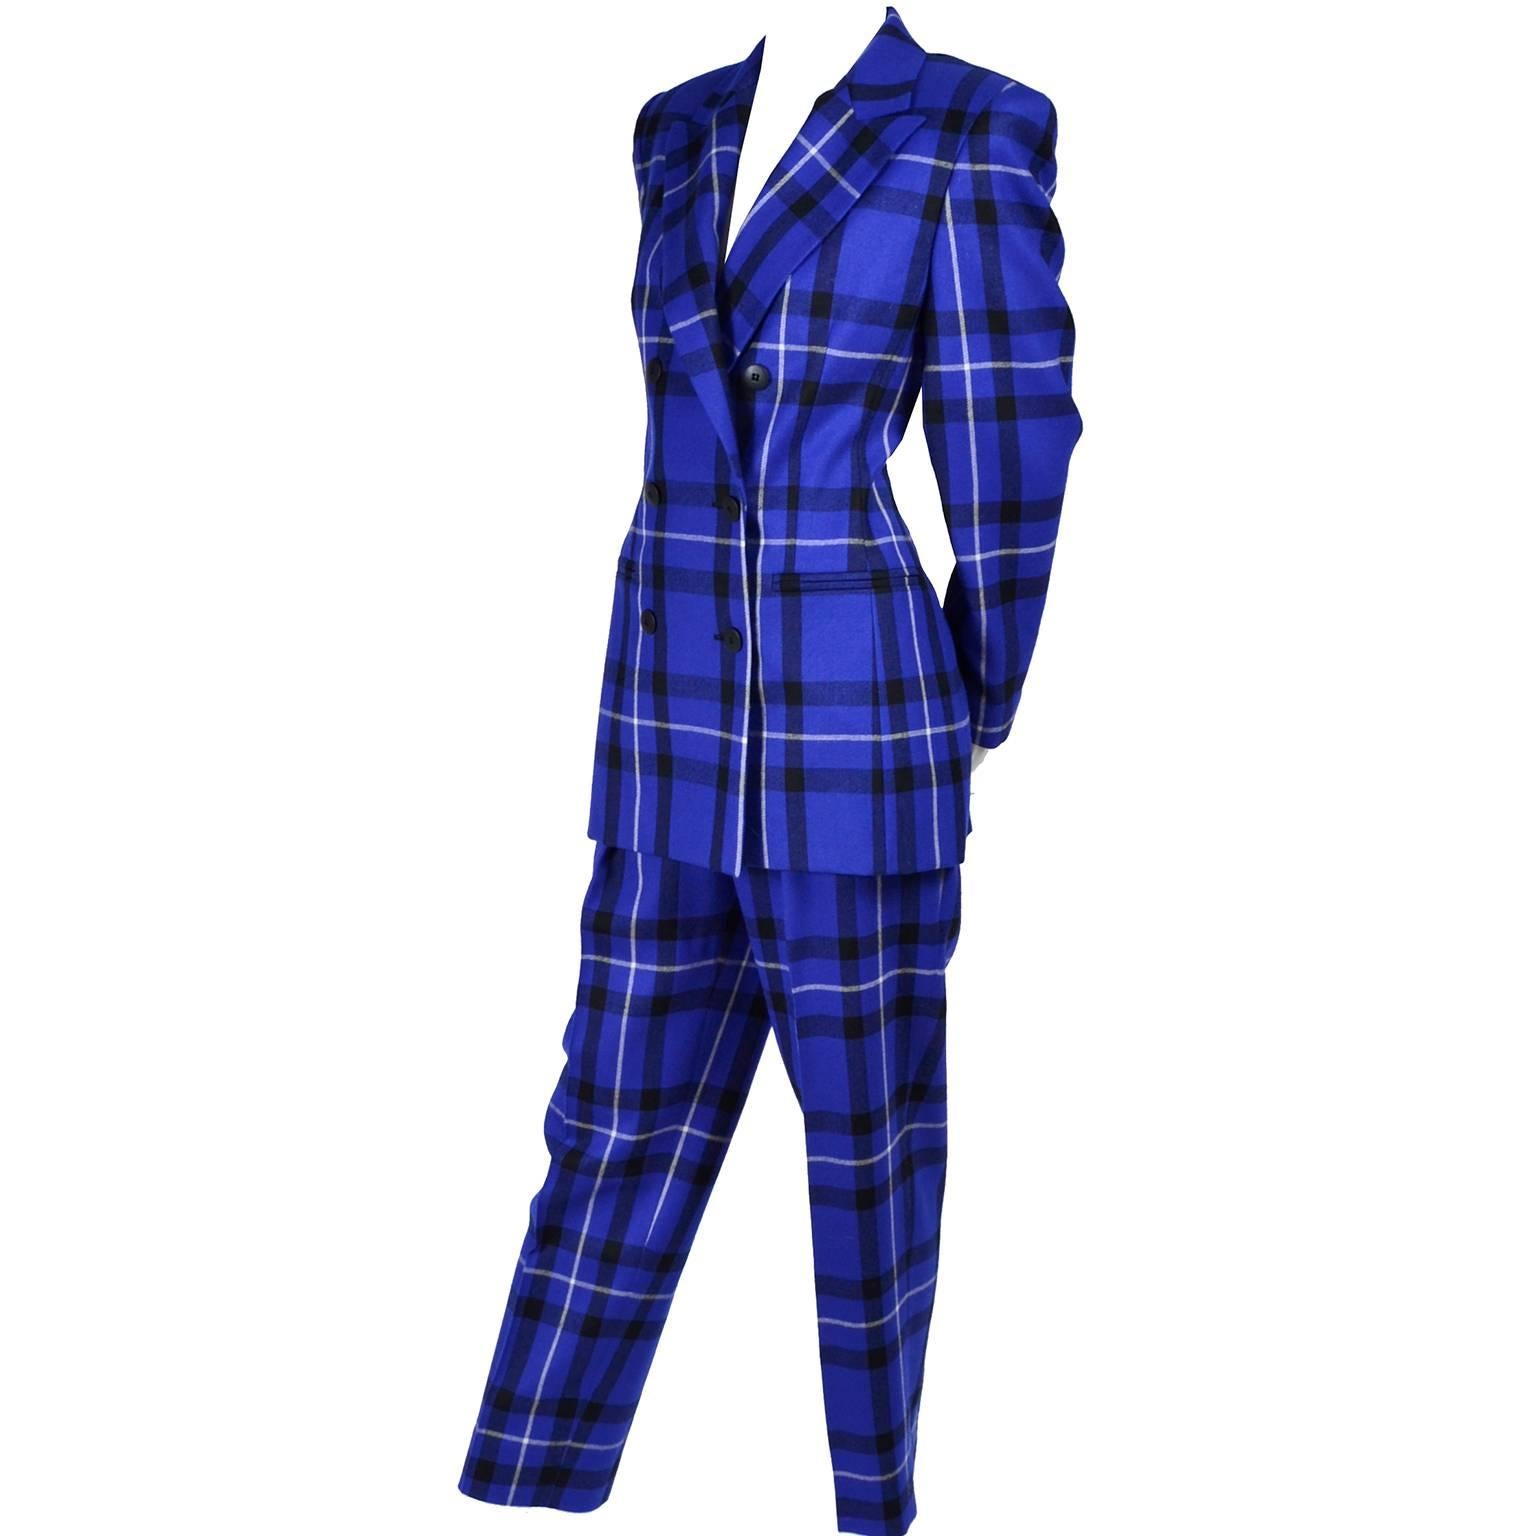 Escada Pantsuit in Blue Plaid Wool w/ Trousers & Blazer Jacket by Margaretha Ley